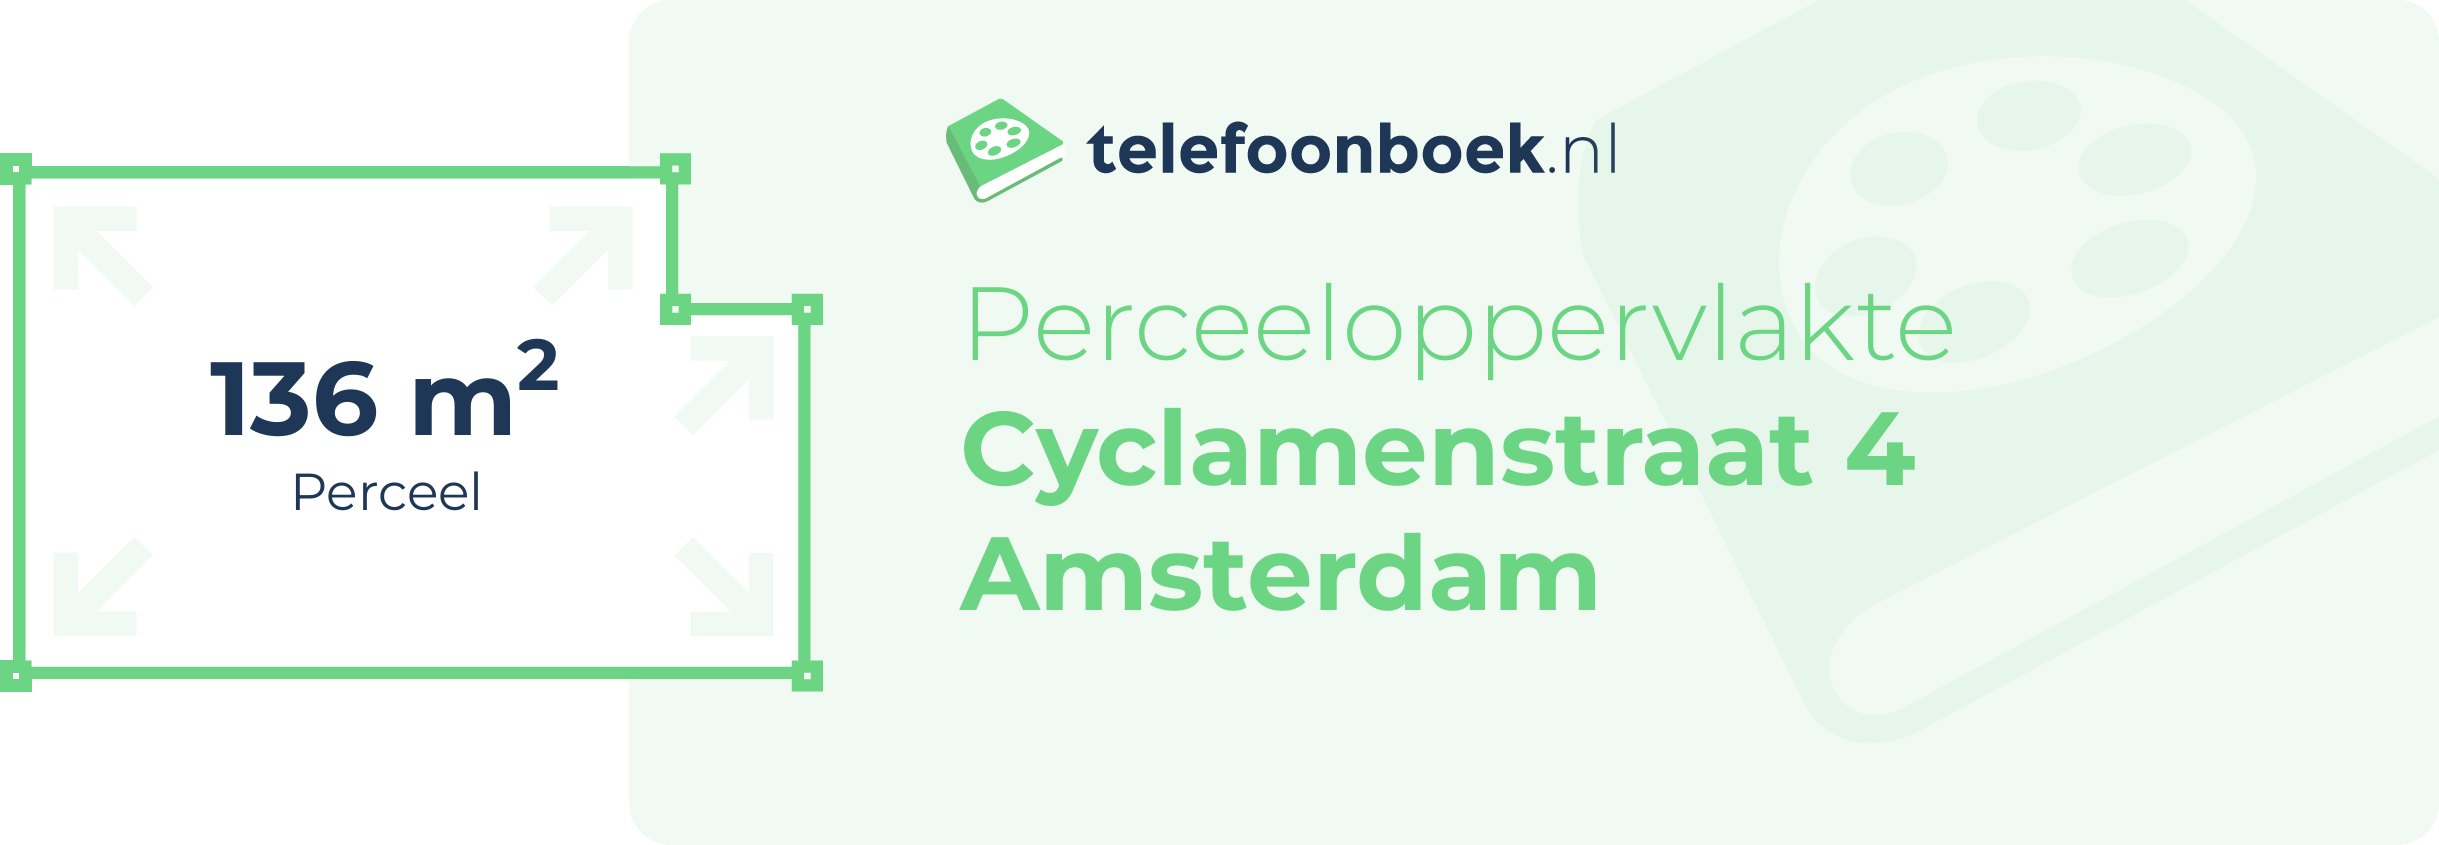 Perceeloppervlakte Cyclamenstraat 4 Amsterdam